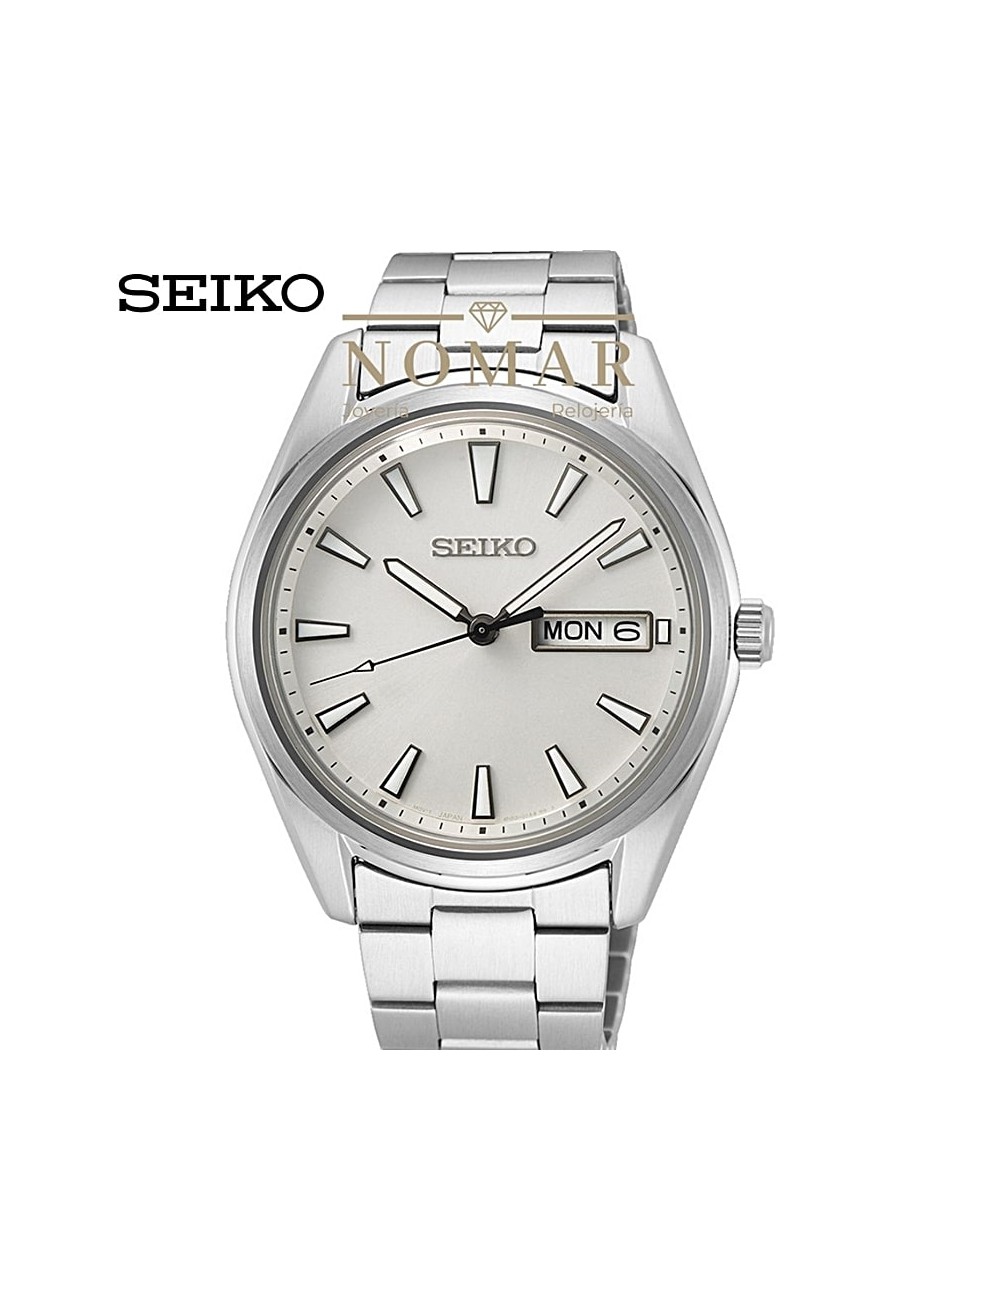 Reloj Seiko de hombre Neo Classic analógico acero doble calendario